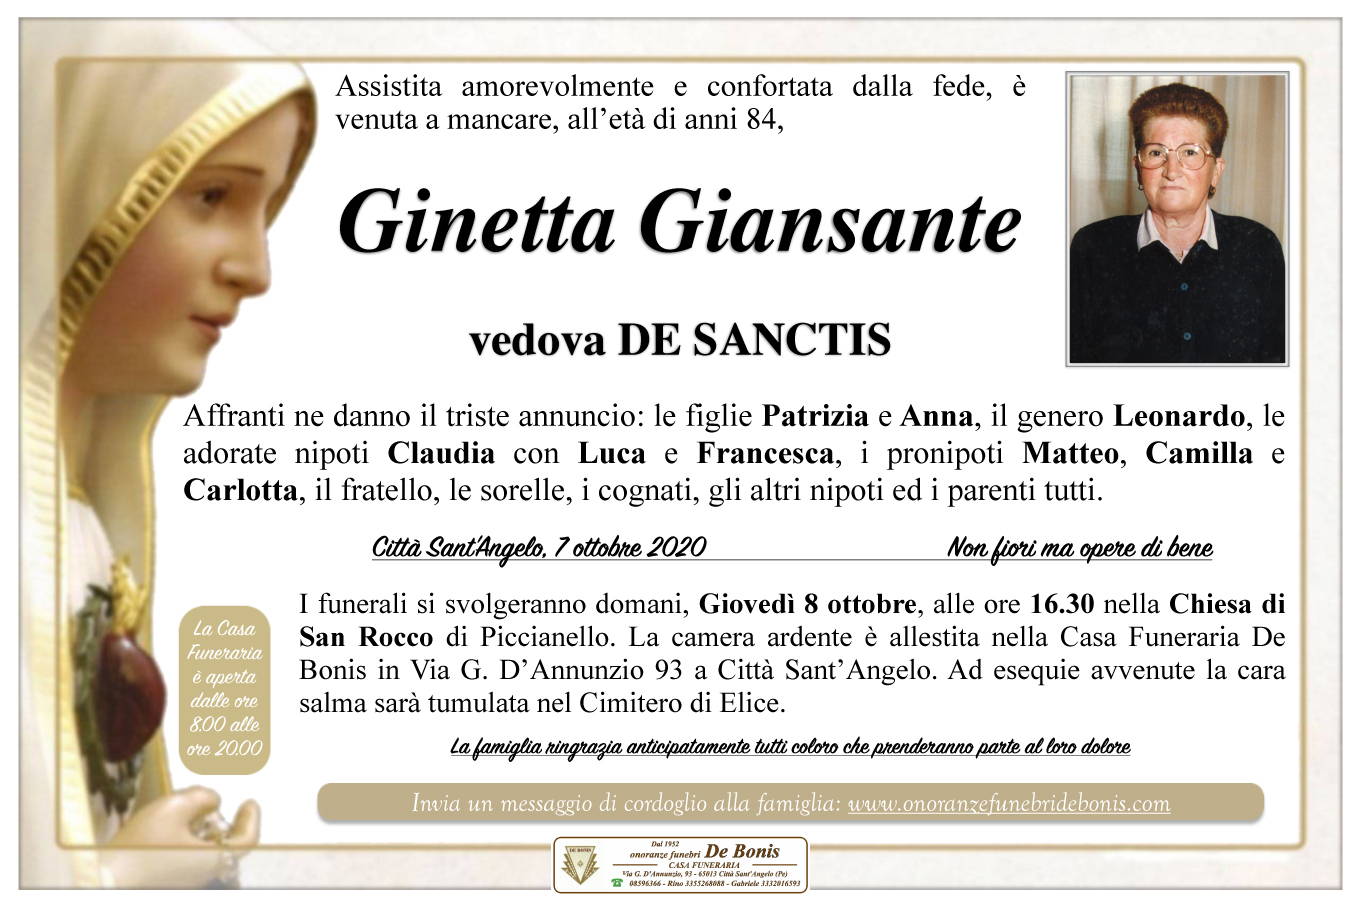 Ginetta Giansante